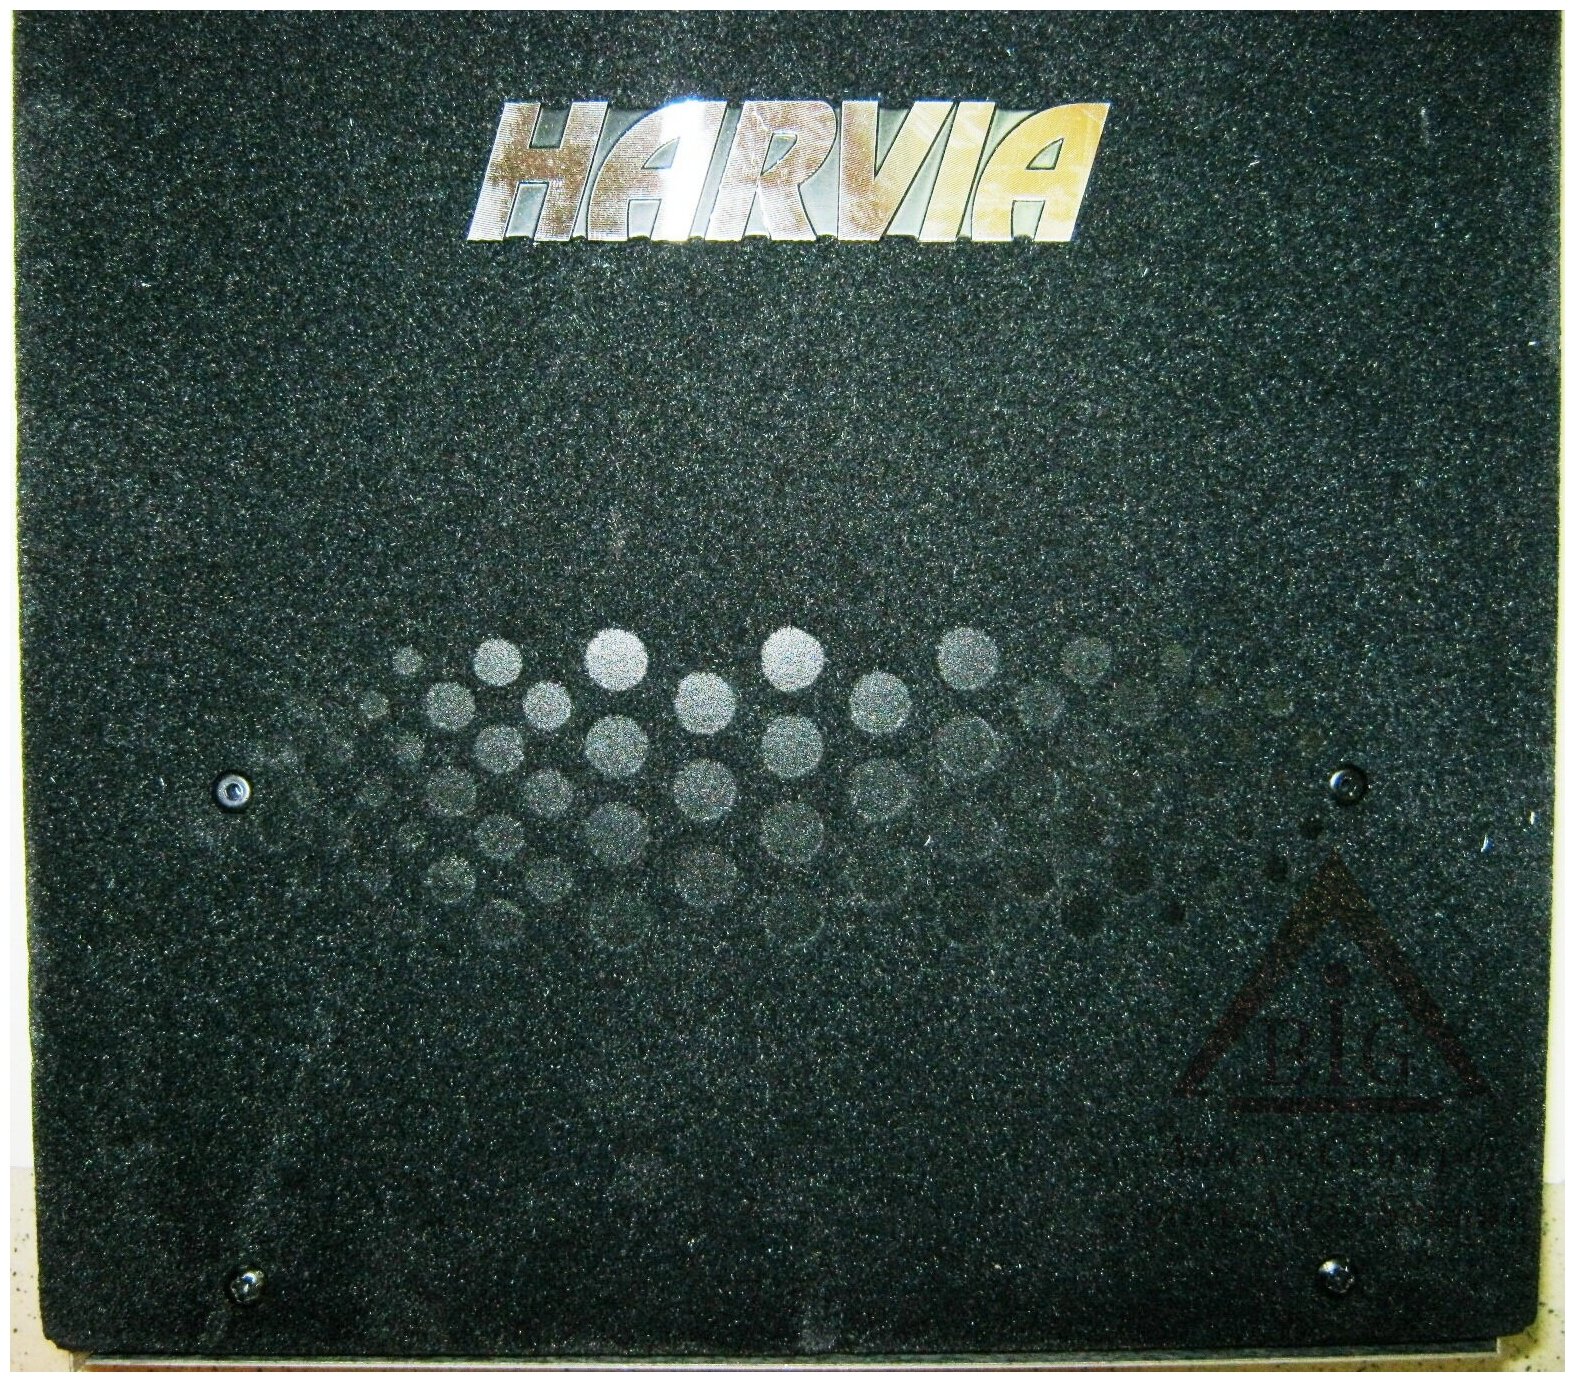 HARVIA Инфракрасный излучатель SACP2303P Basic